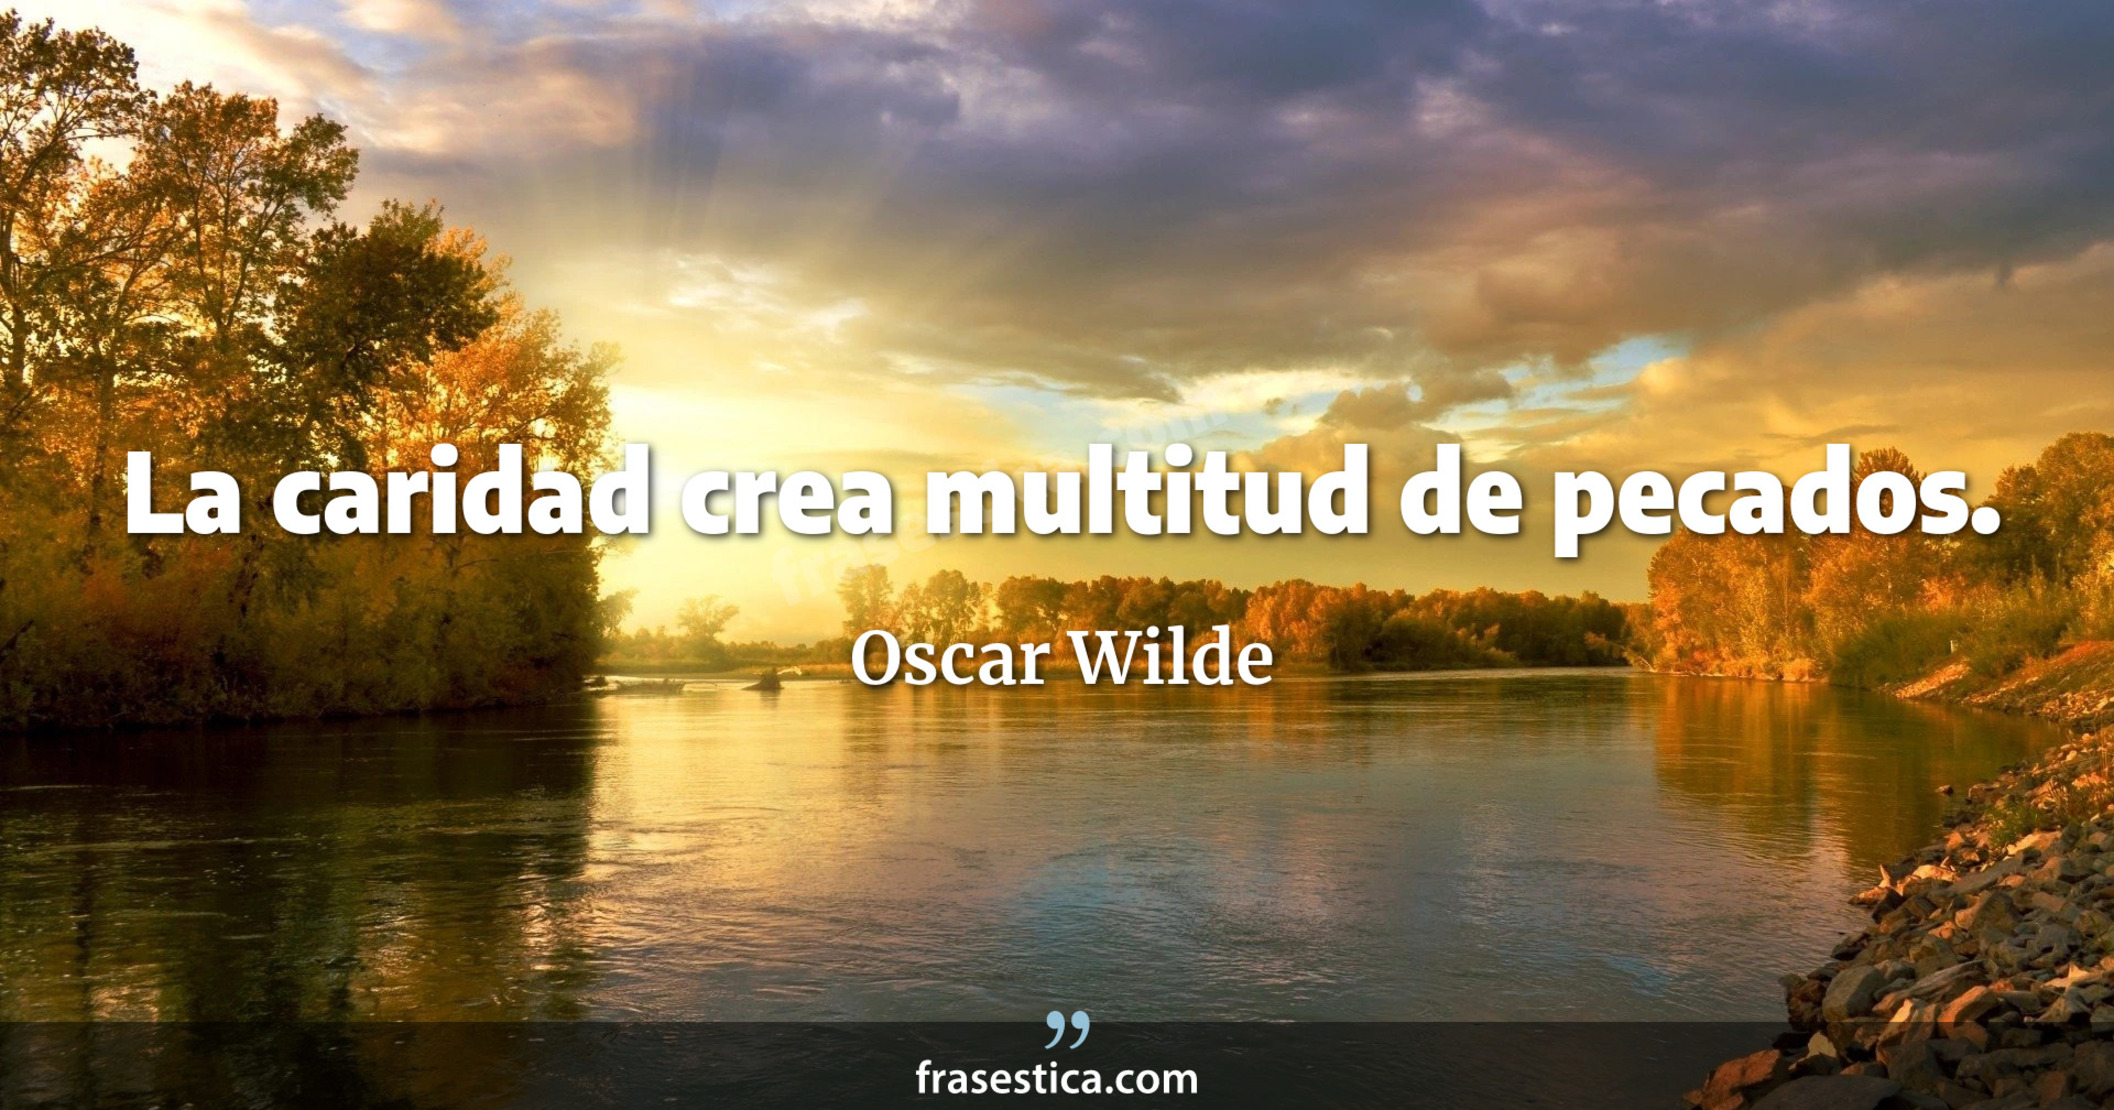 La caridad crea multitud de pecados. - Oscar Wilde